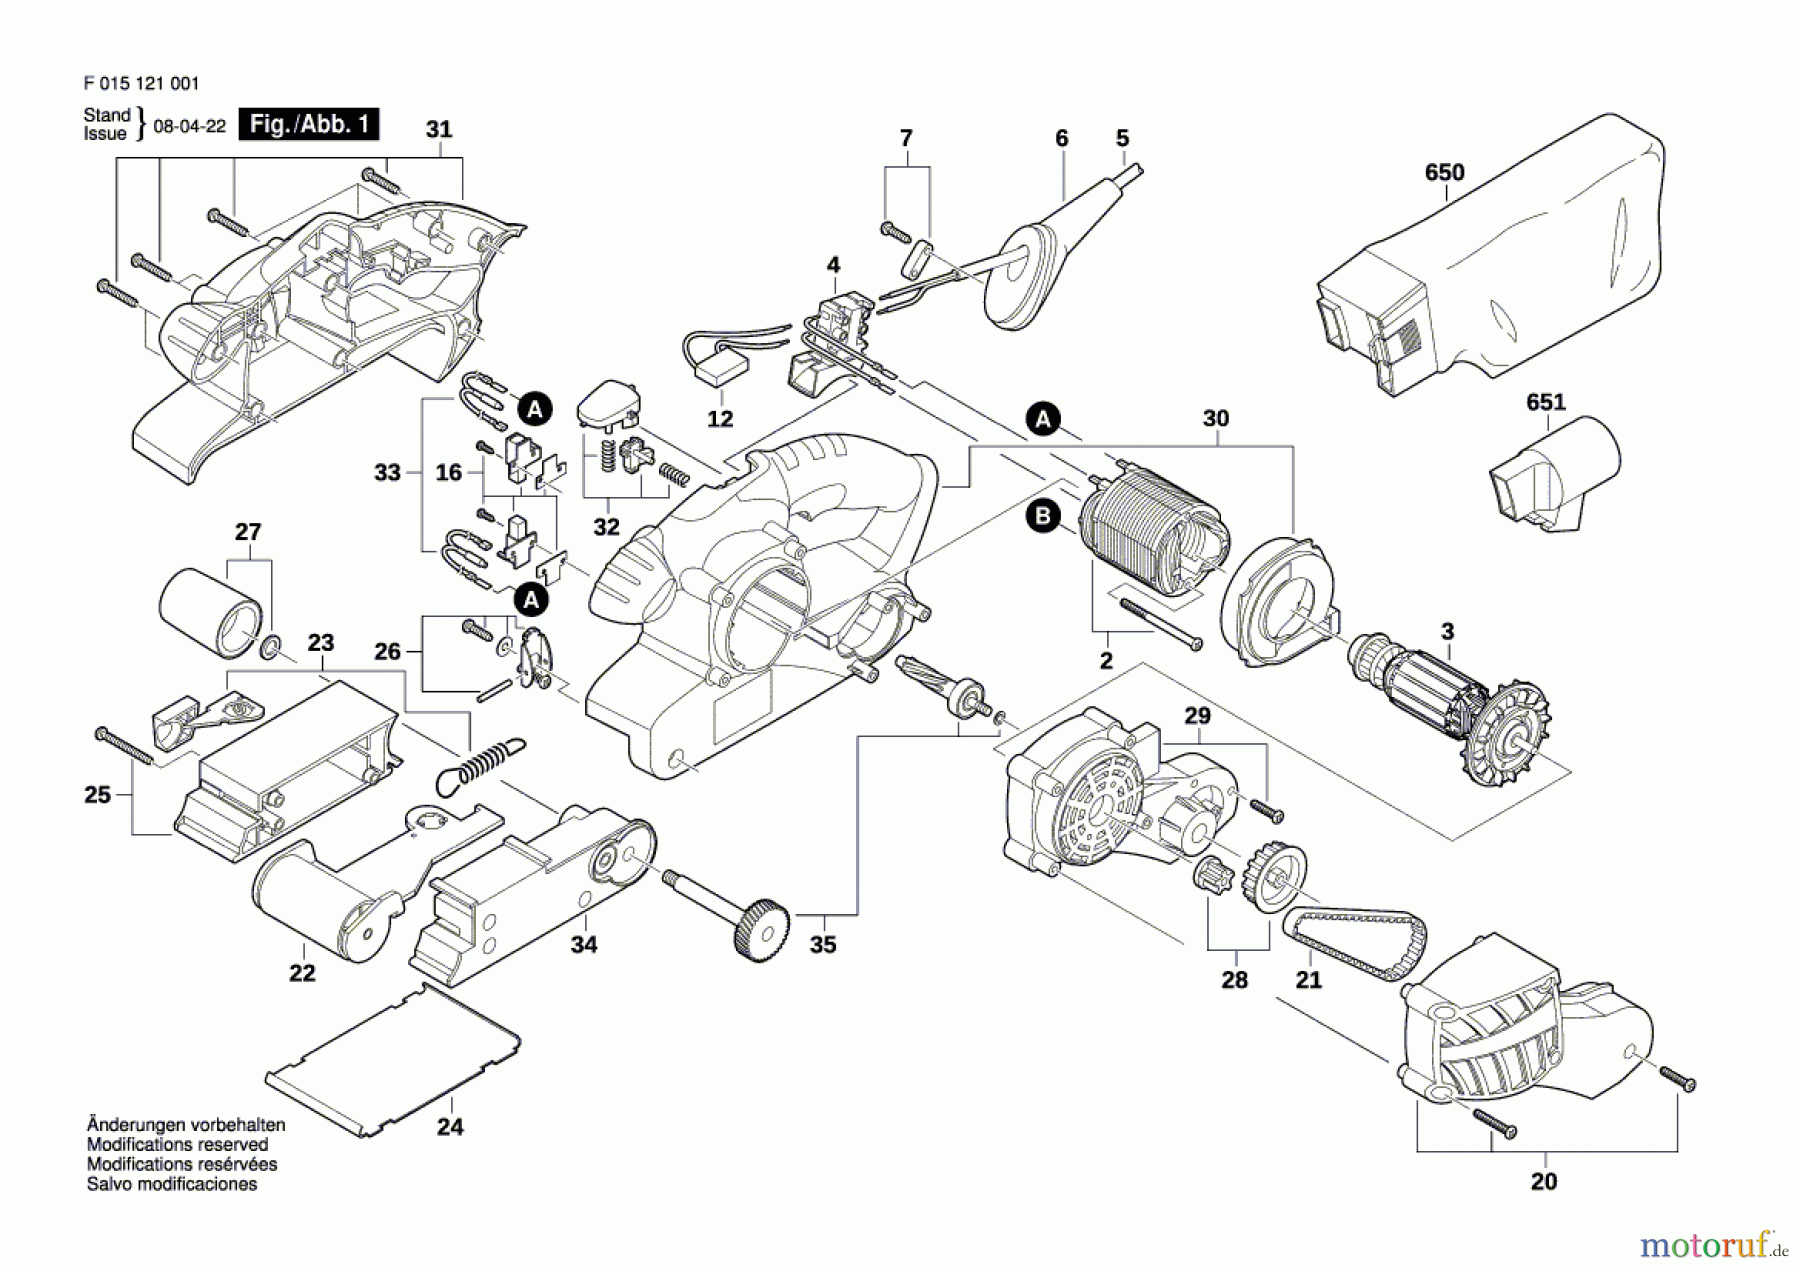  Bosch Werkzeug Bandschleifer 1220 Seite 1